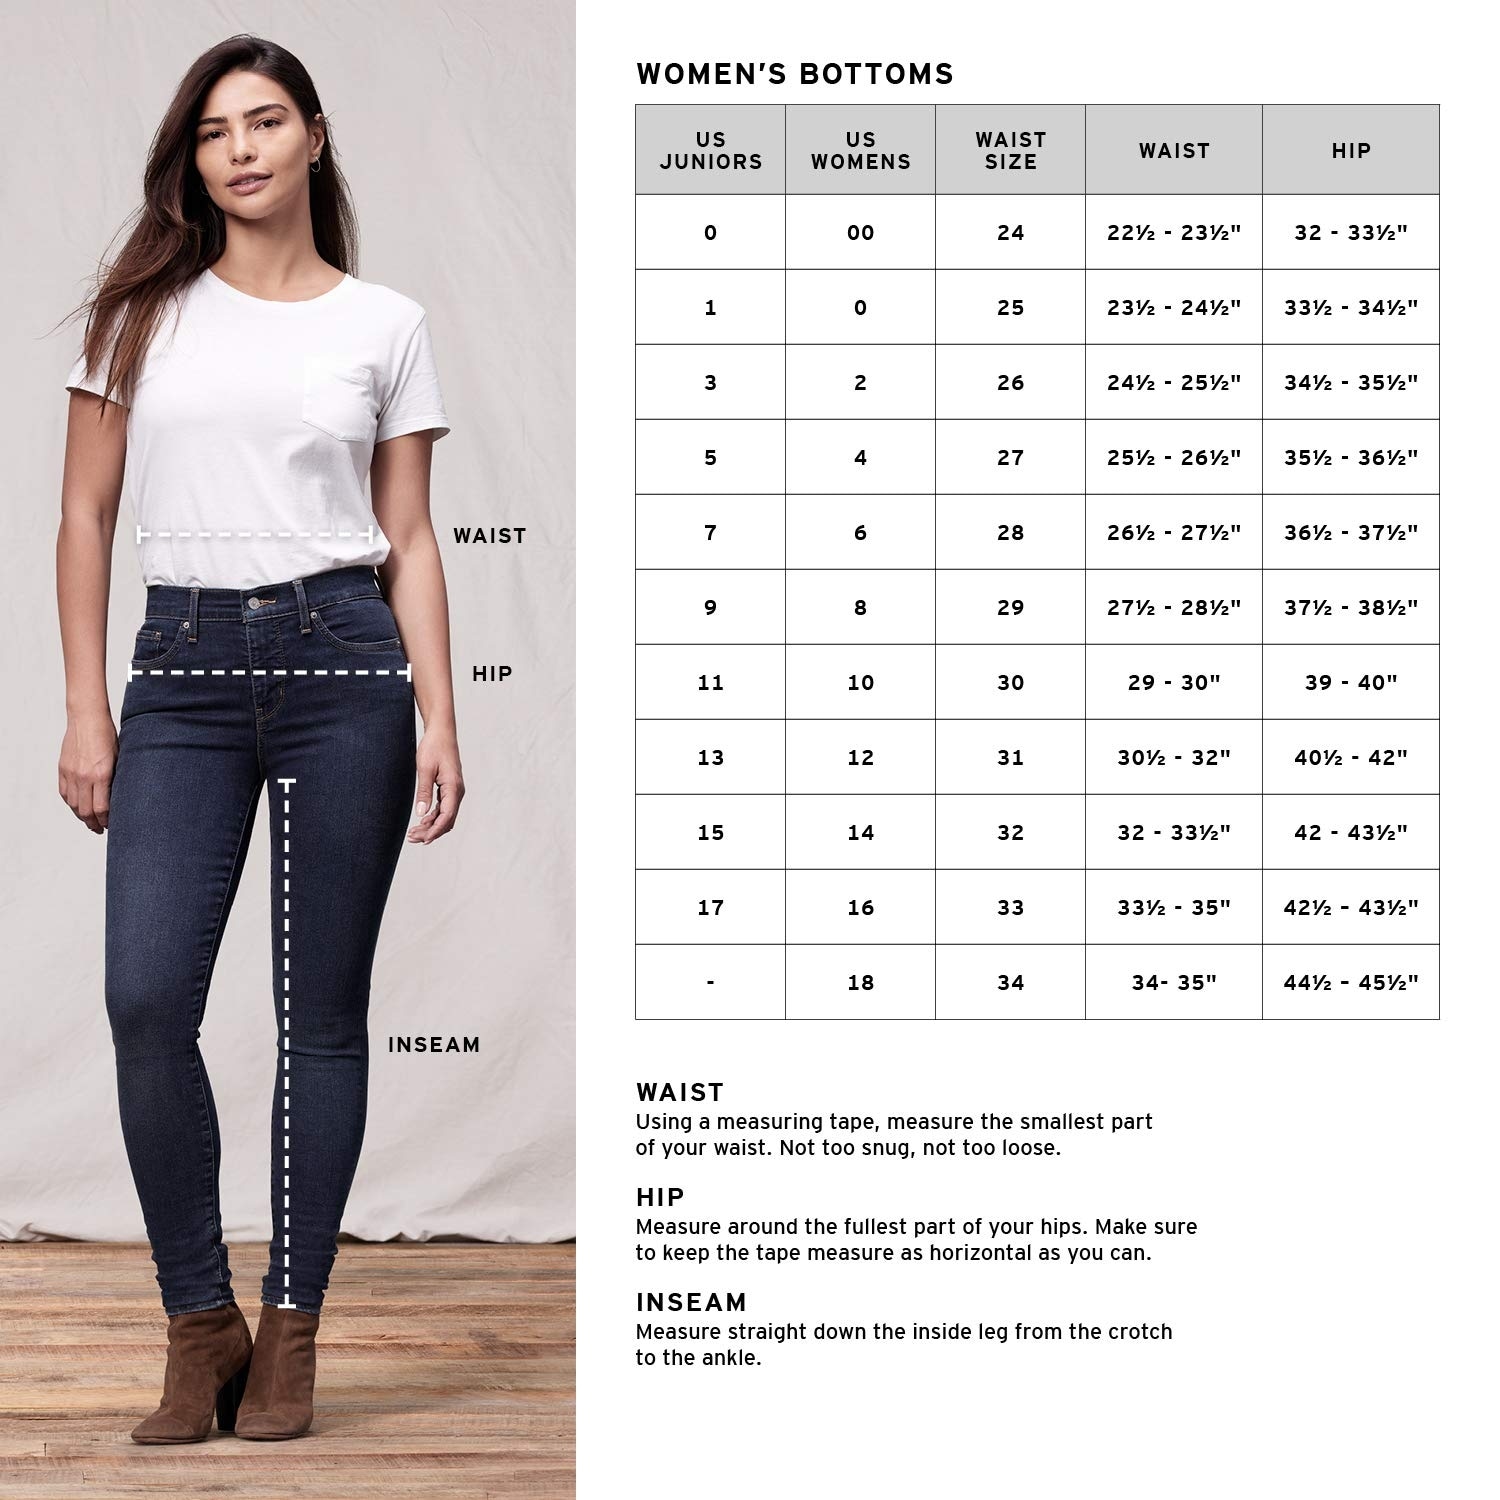 women's size 18 skinny jeans